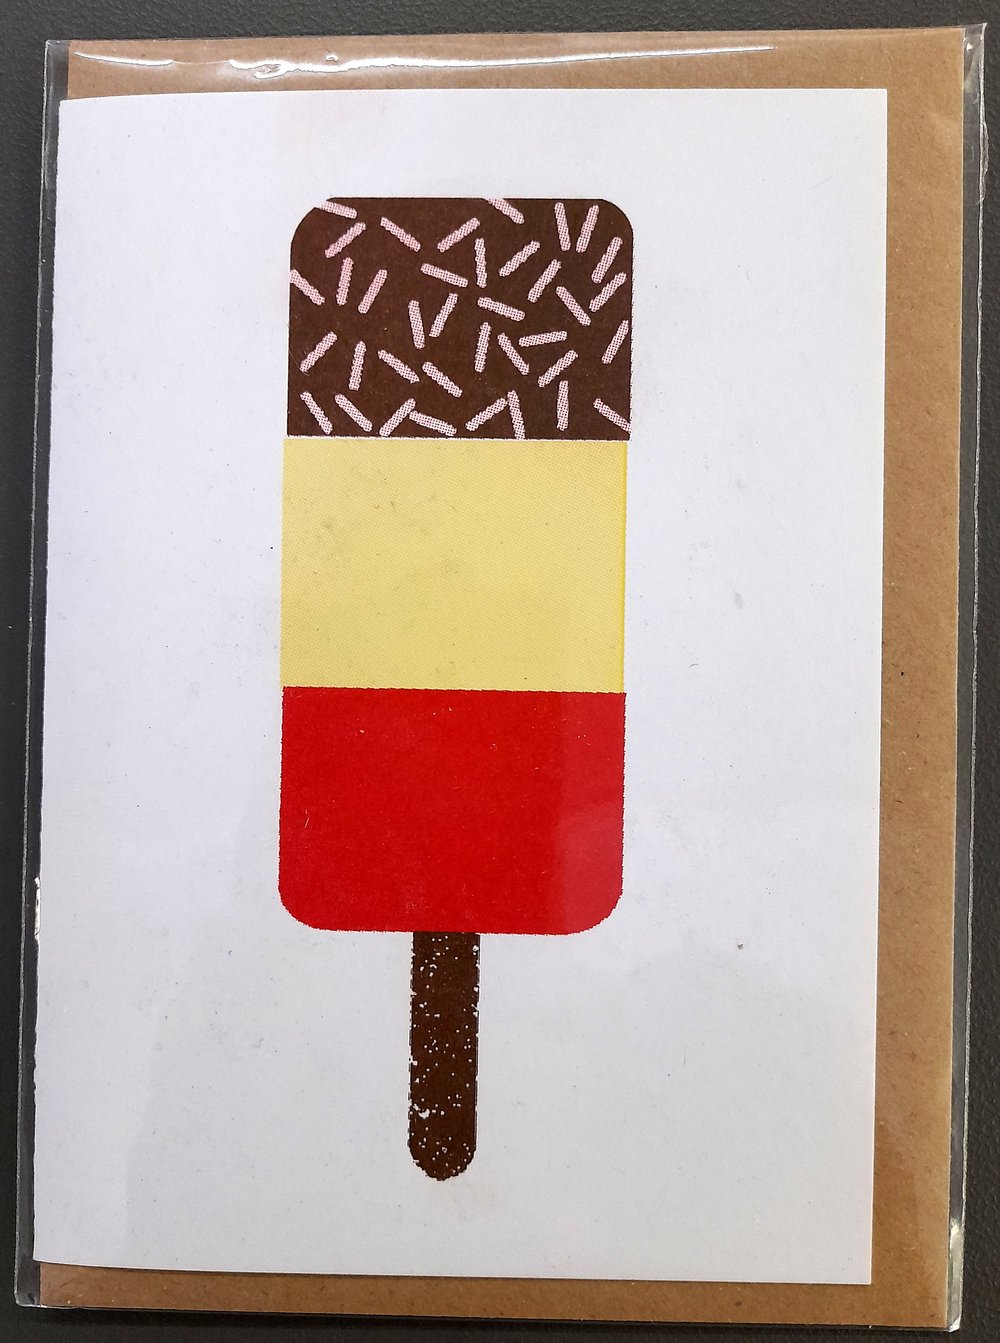 Retro Ice Cream Cards